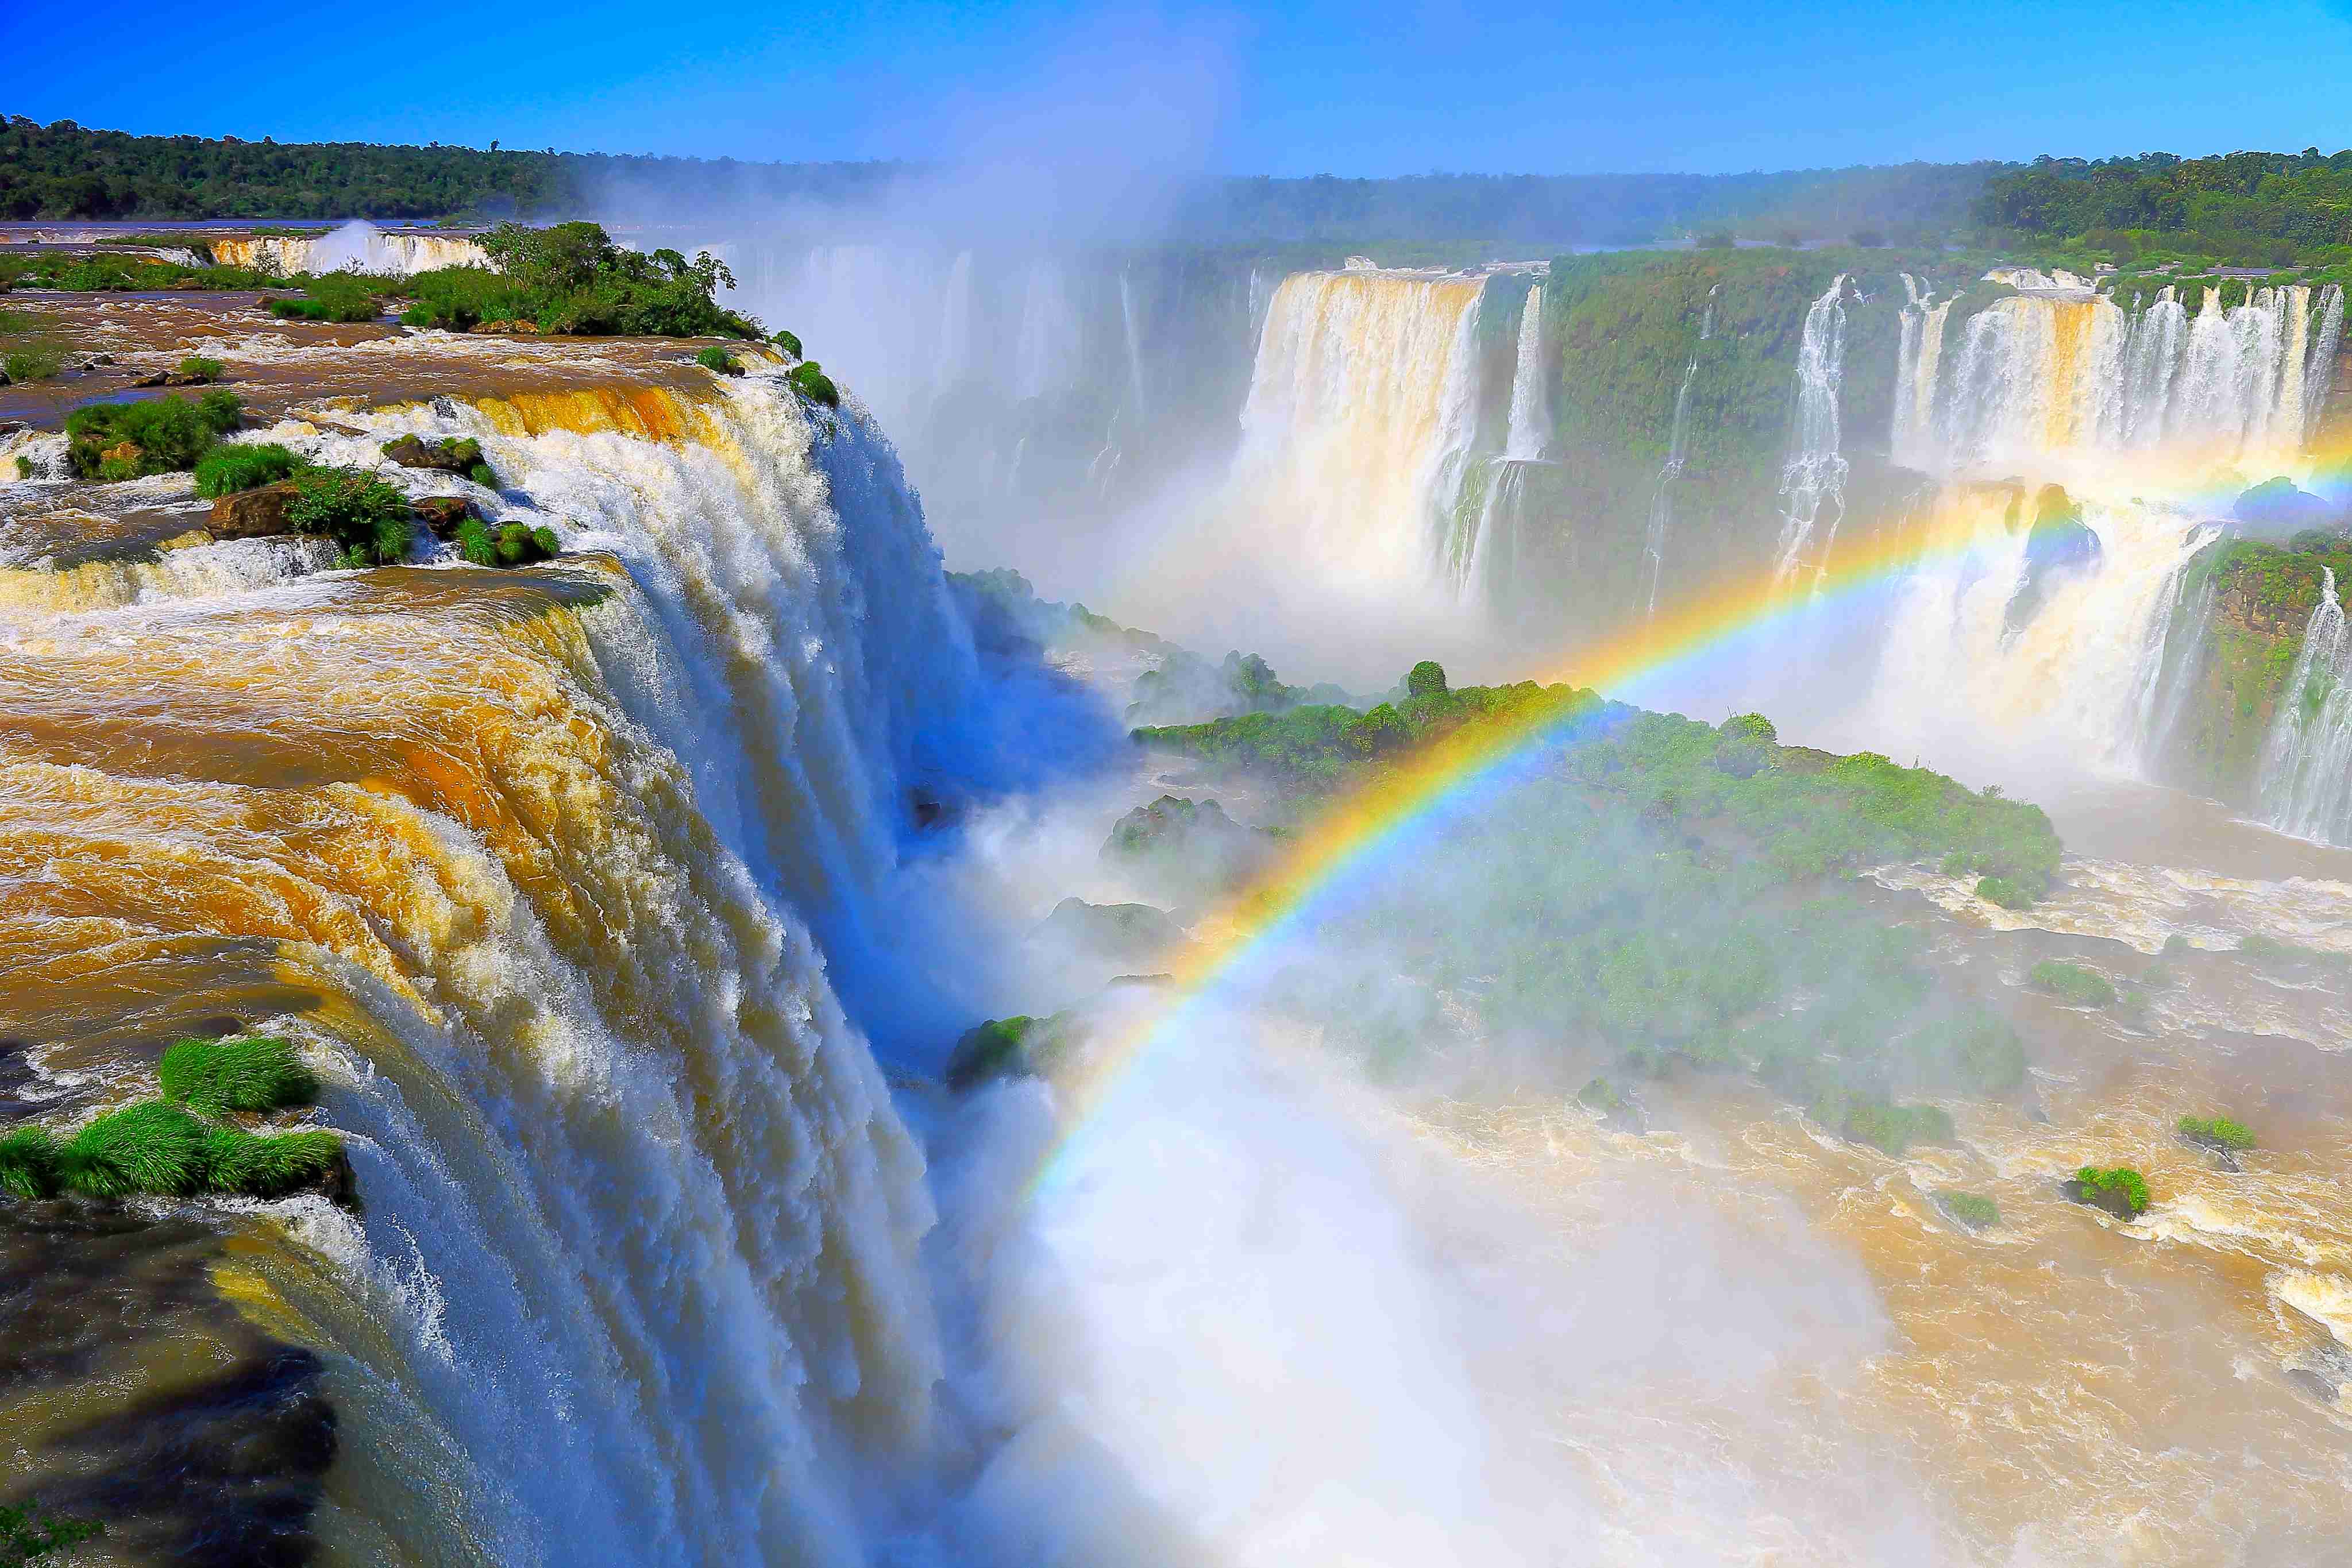 Les chutes d’eau d’Iguazu